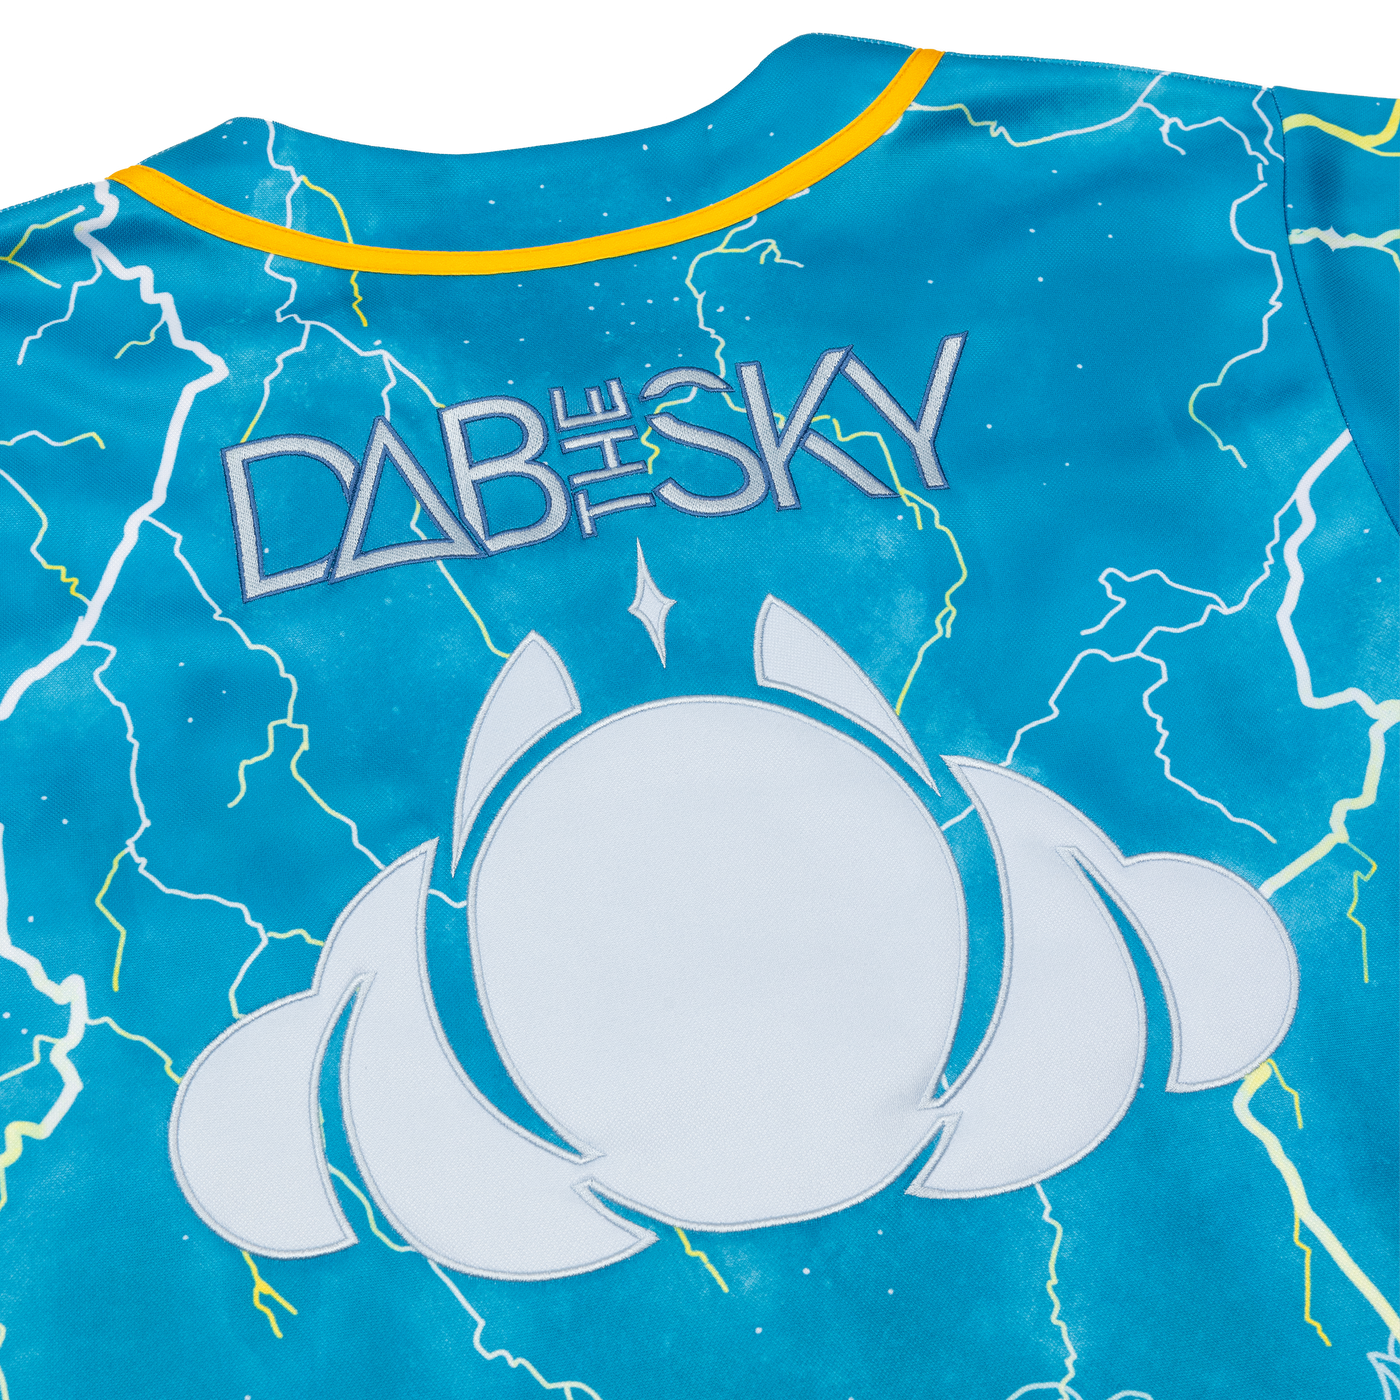 DabTheSky Jersey